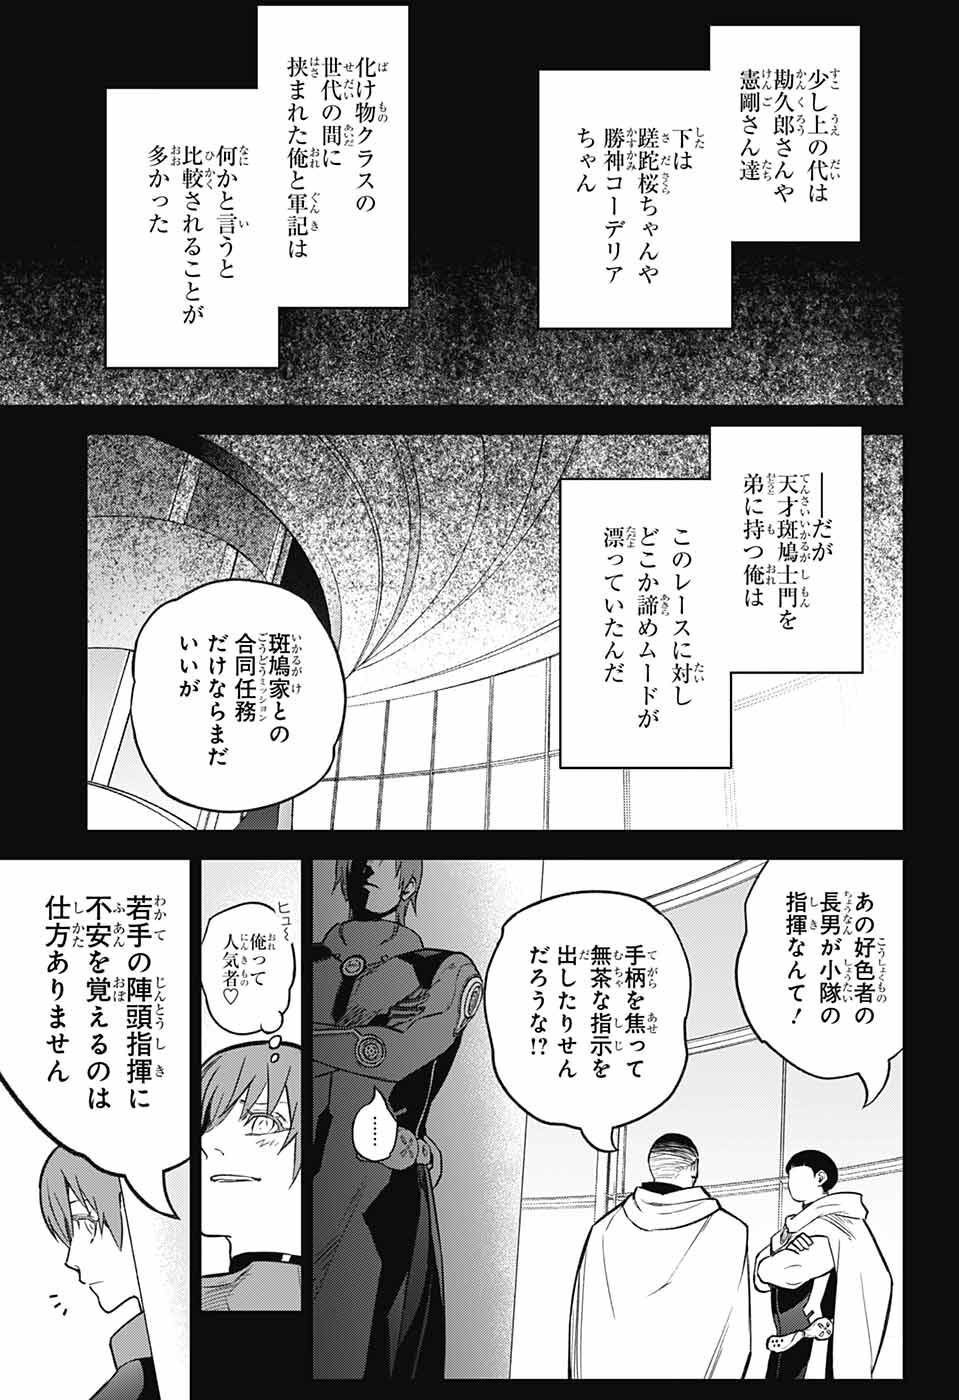 Sousei no Onmyouji - Chapter 118 - Page 3